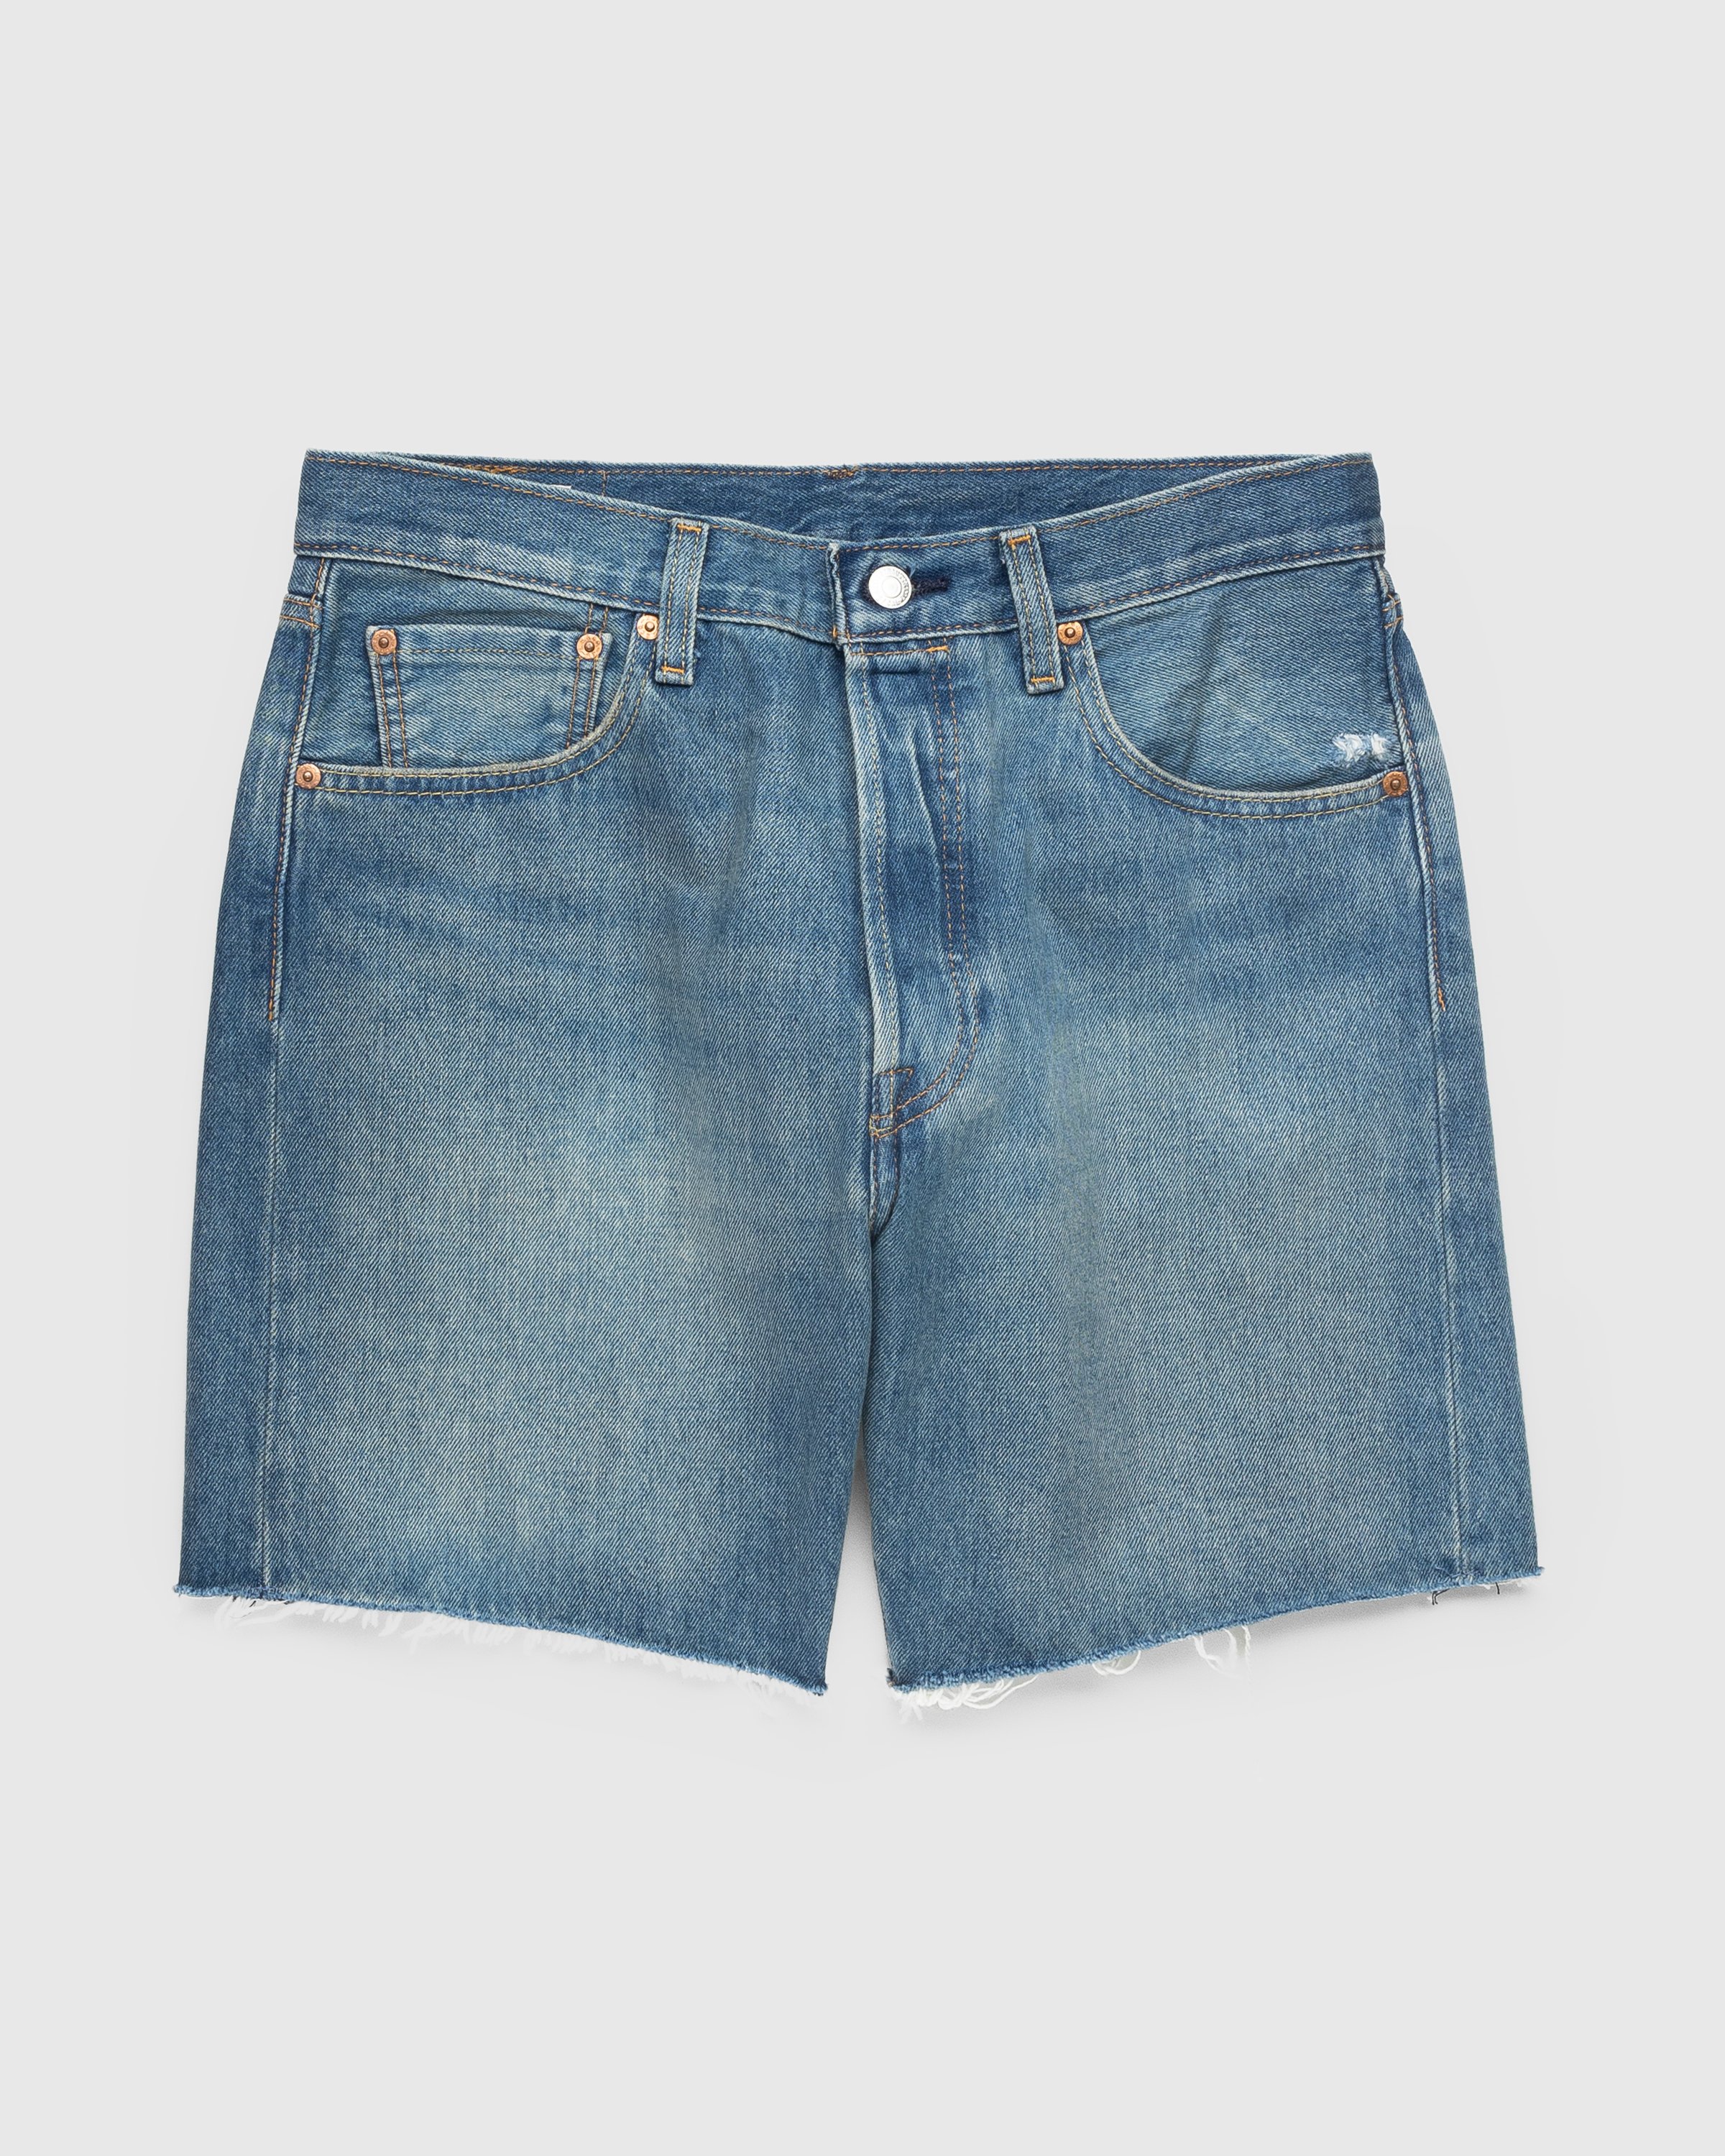 Levi's - 501 '93 Cut-Off Shorts Indigo Stonewash - Clothing - Blue - Image 1